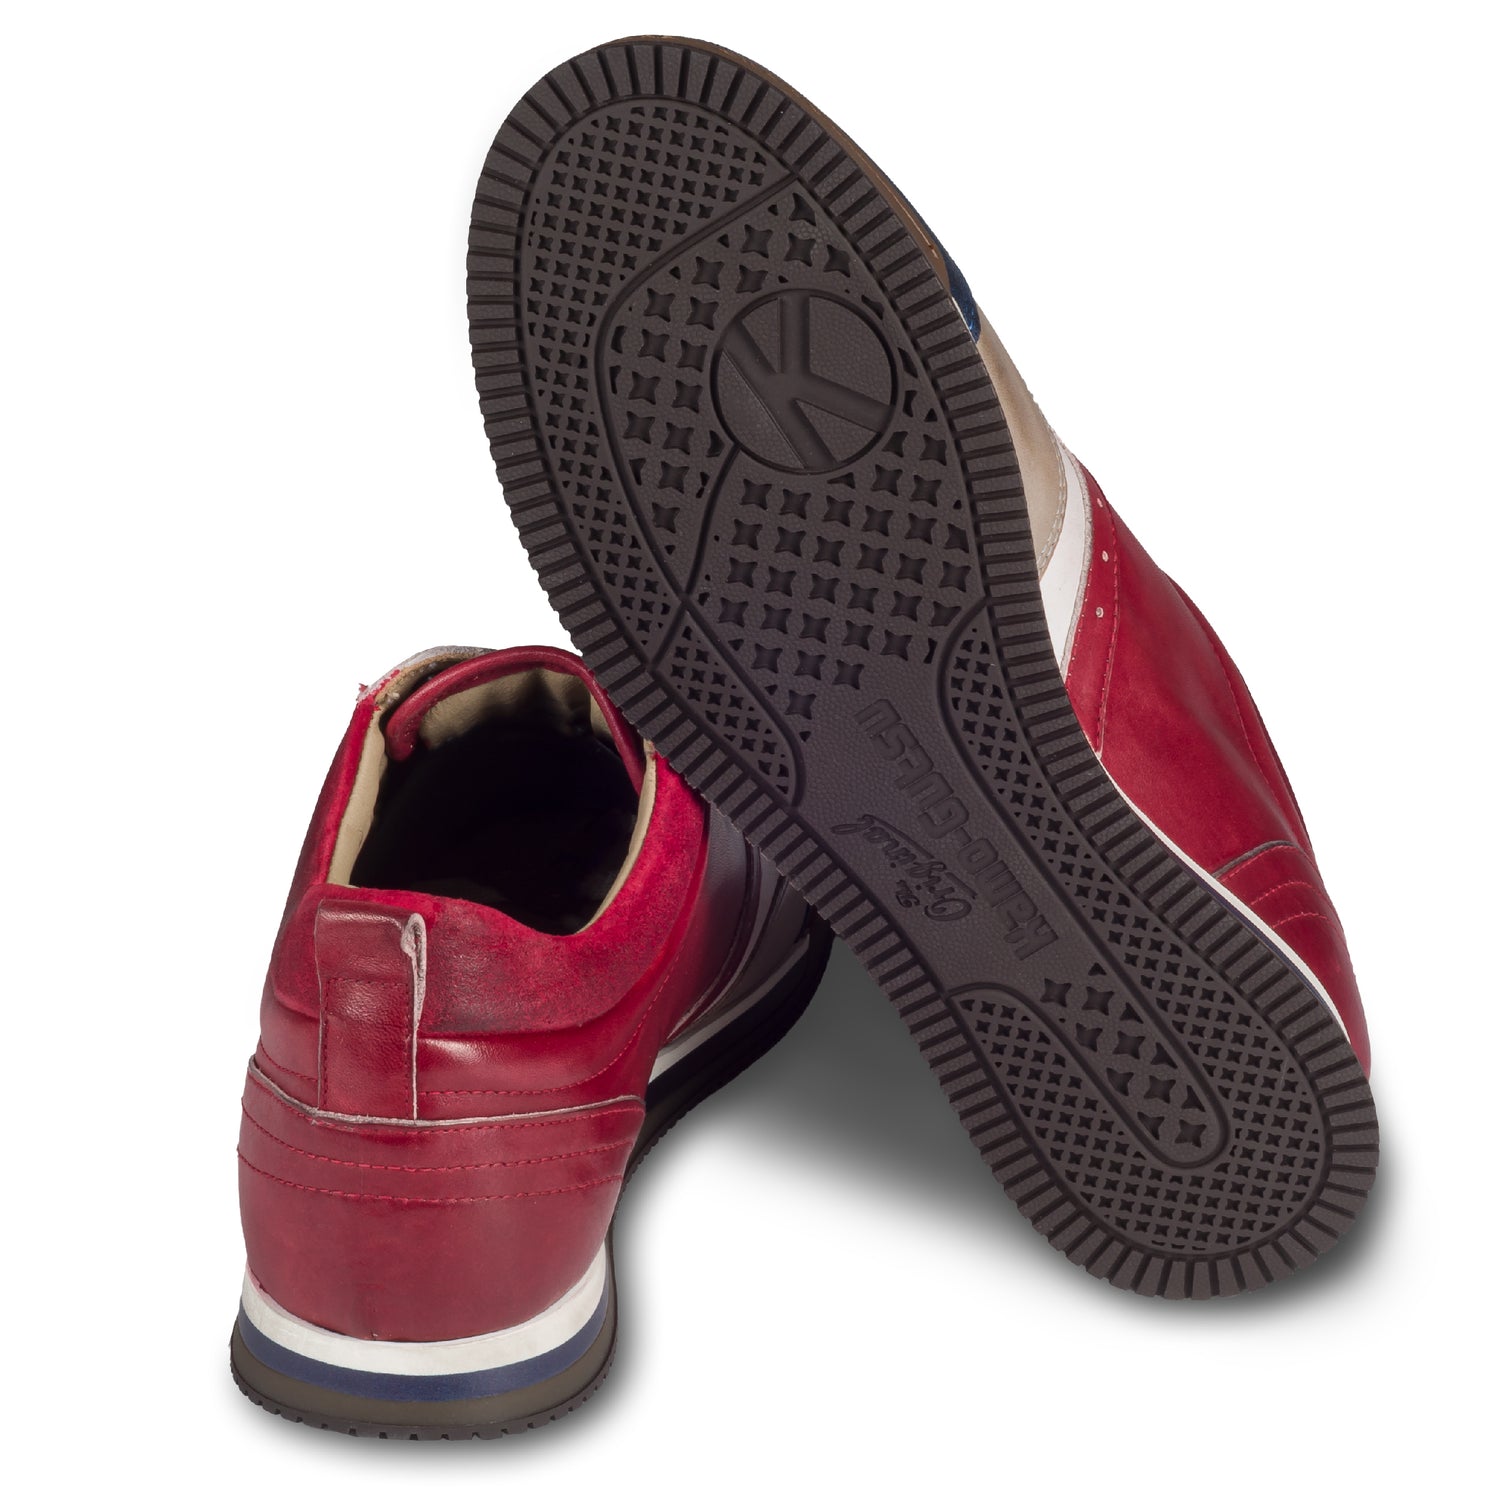 KAMO-GUTSU Herren Leder Sneaker rot / weiß / blau / grau, Retro-Optik. Modell SCUDO-005 rosso combi. Handgefertigt in Italien. Ansicht der Ferse und Sohlenunterseite. 